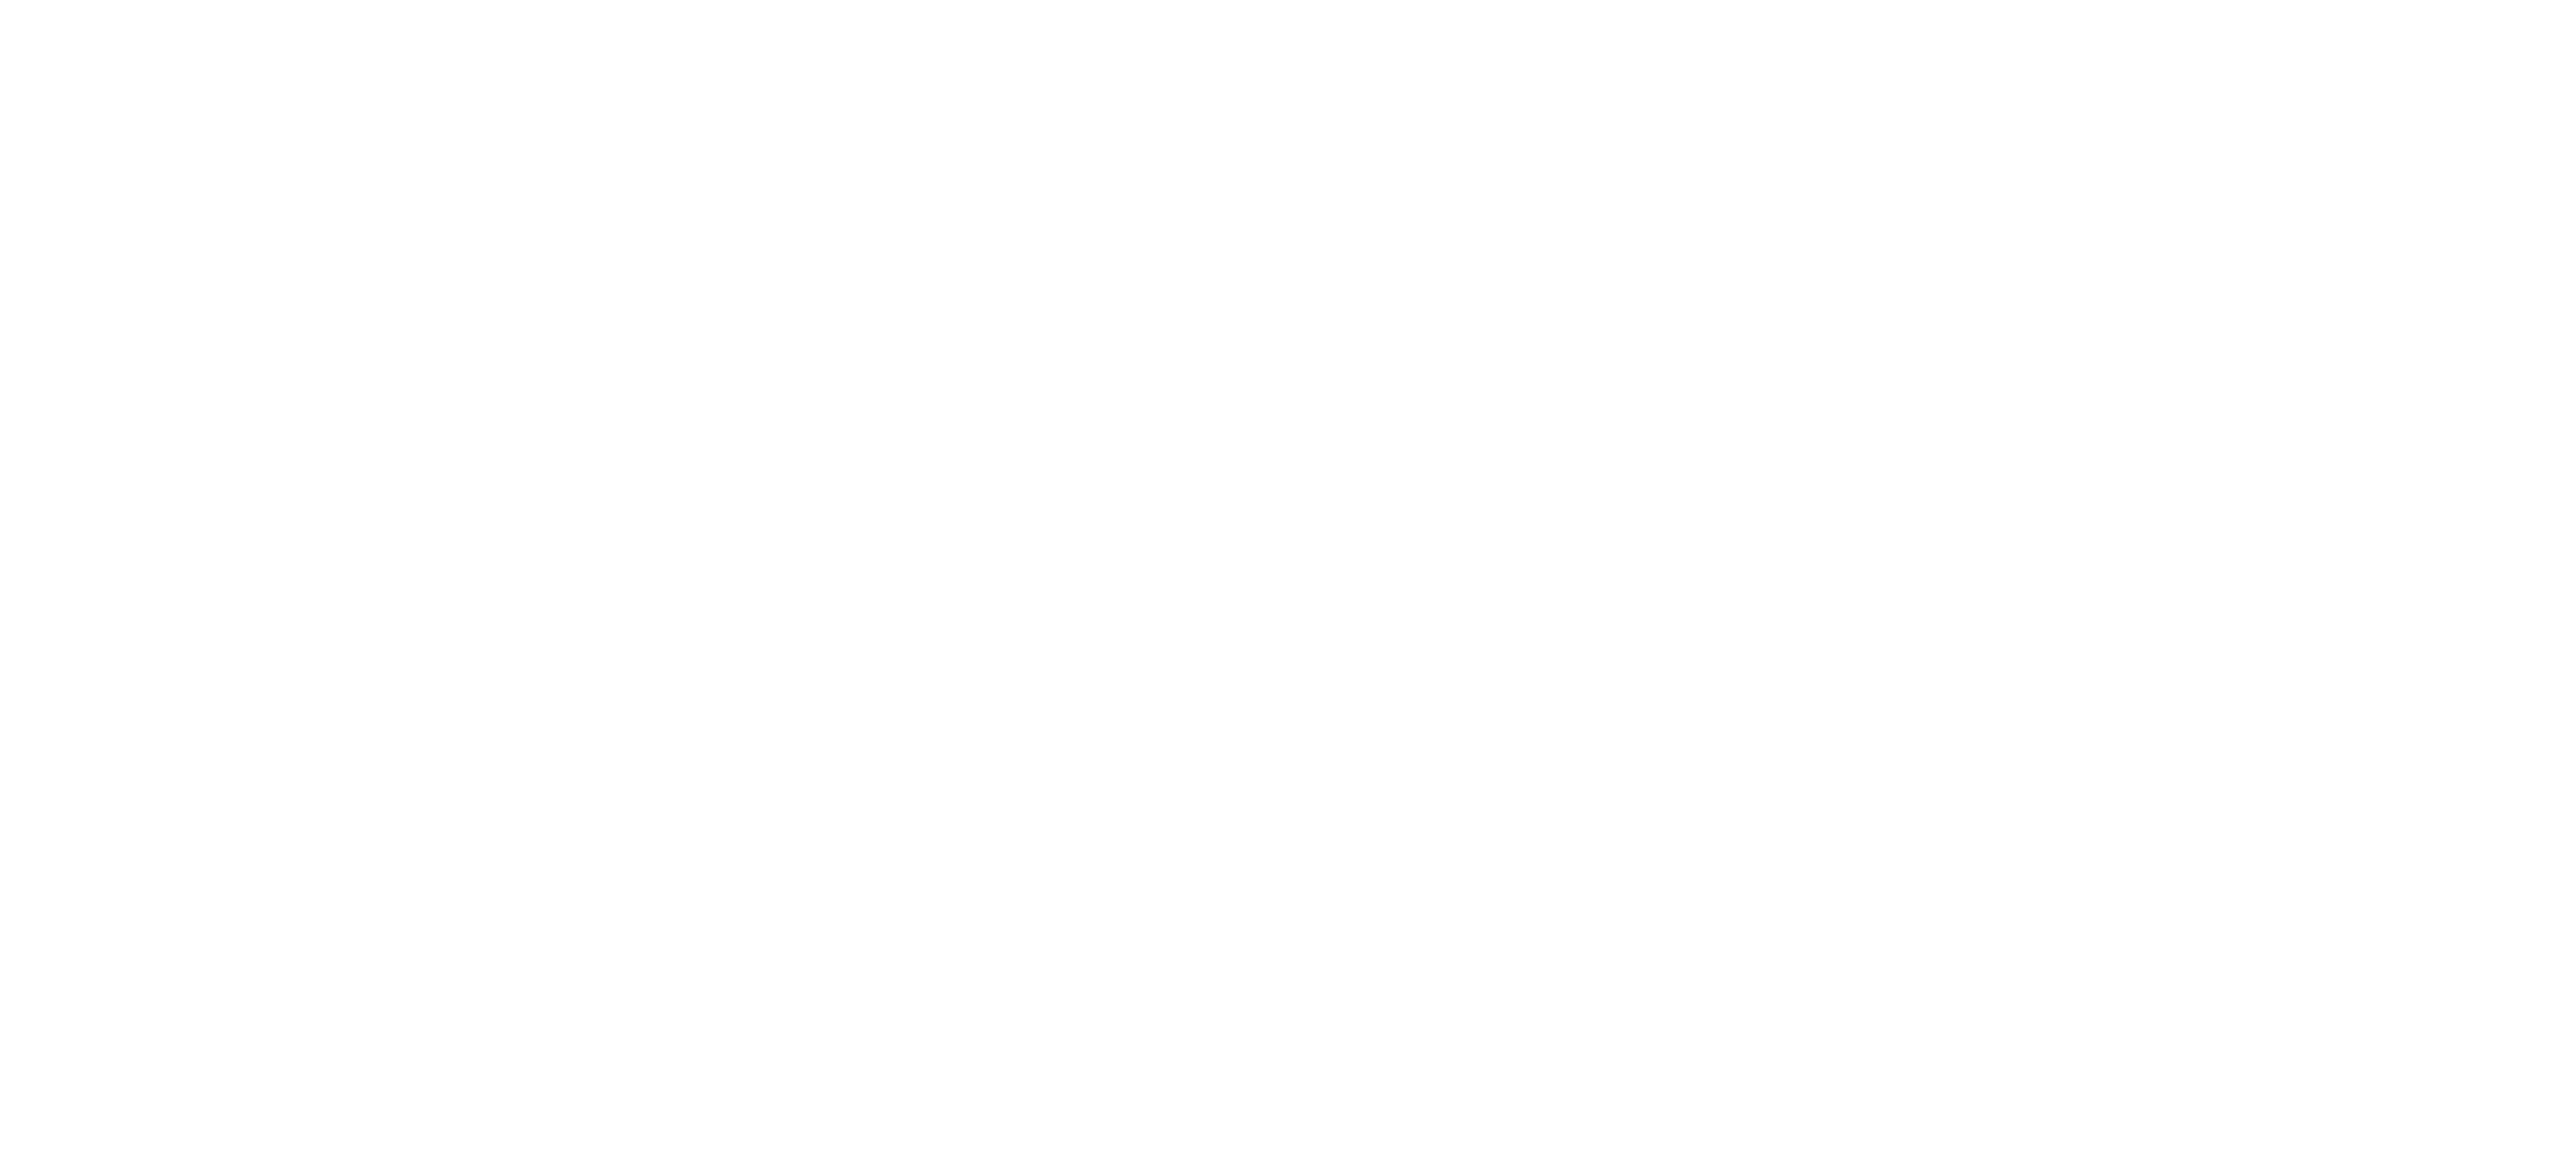 Aquaman: King of Atlantis logo